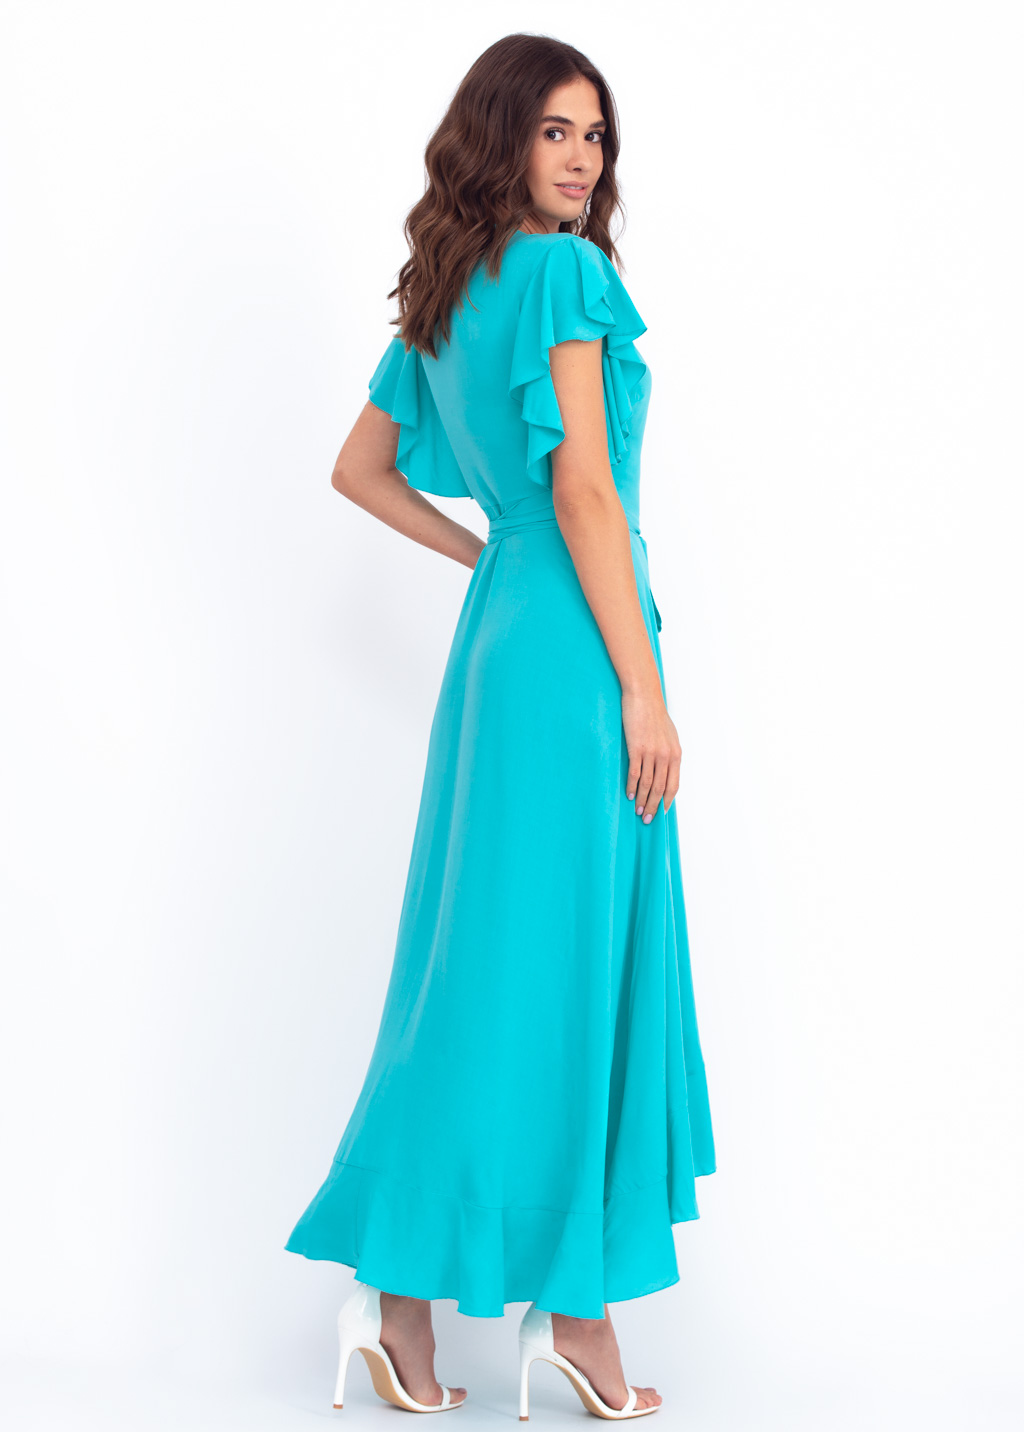 Turquoise romantic wrap around dress